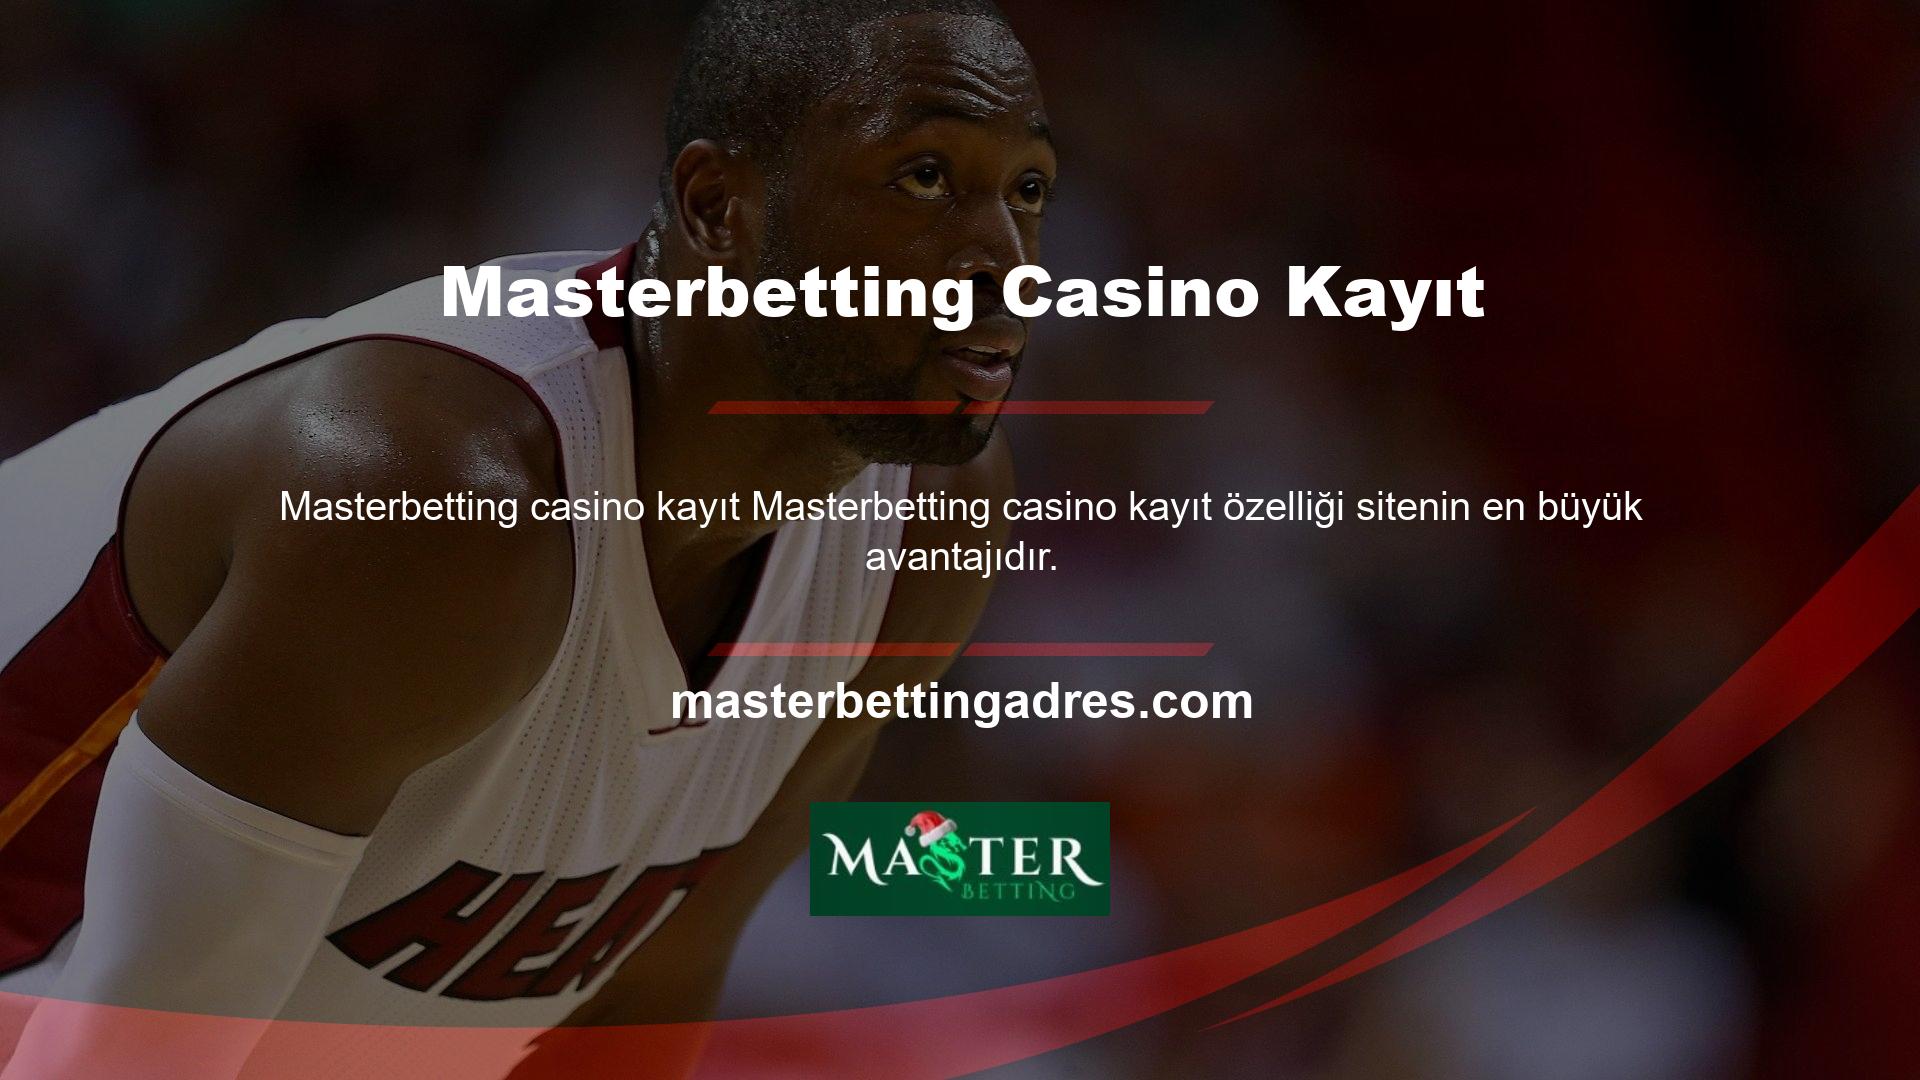 Mevcut giriş adresinizi kullanarak Masterbetting Casino web sitesini ziyaret ederek bu şirketten en iyi fiyata kupon oluşturabilirsiniz